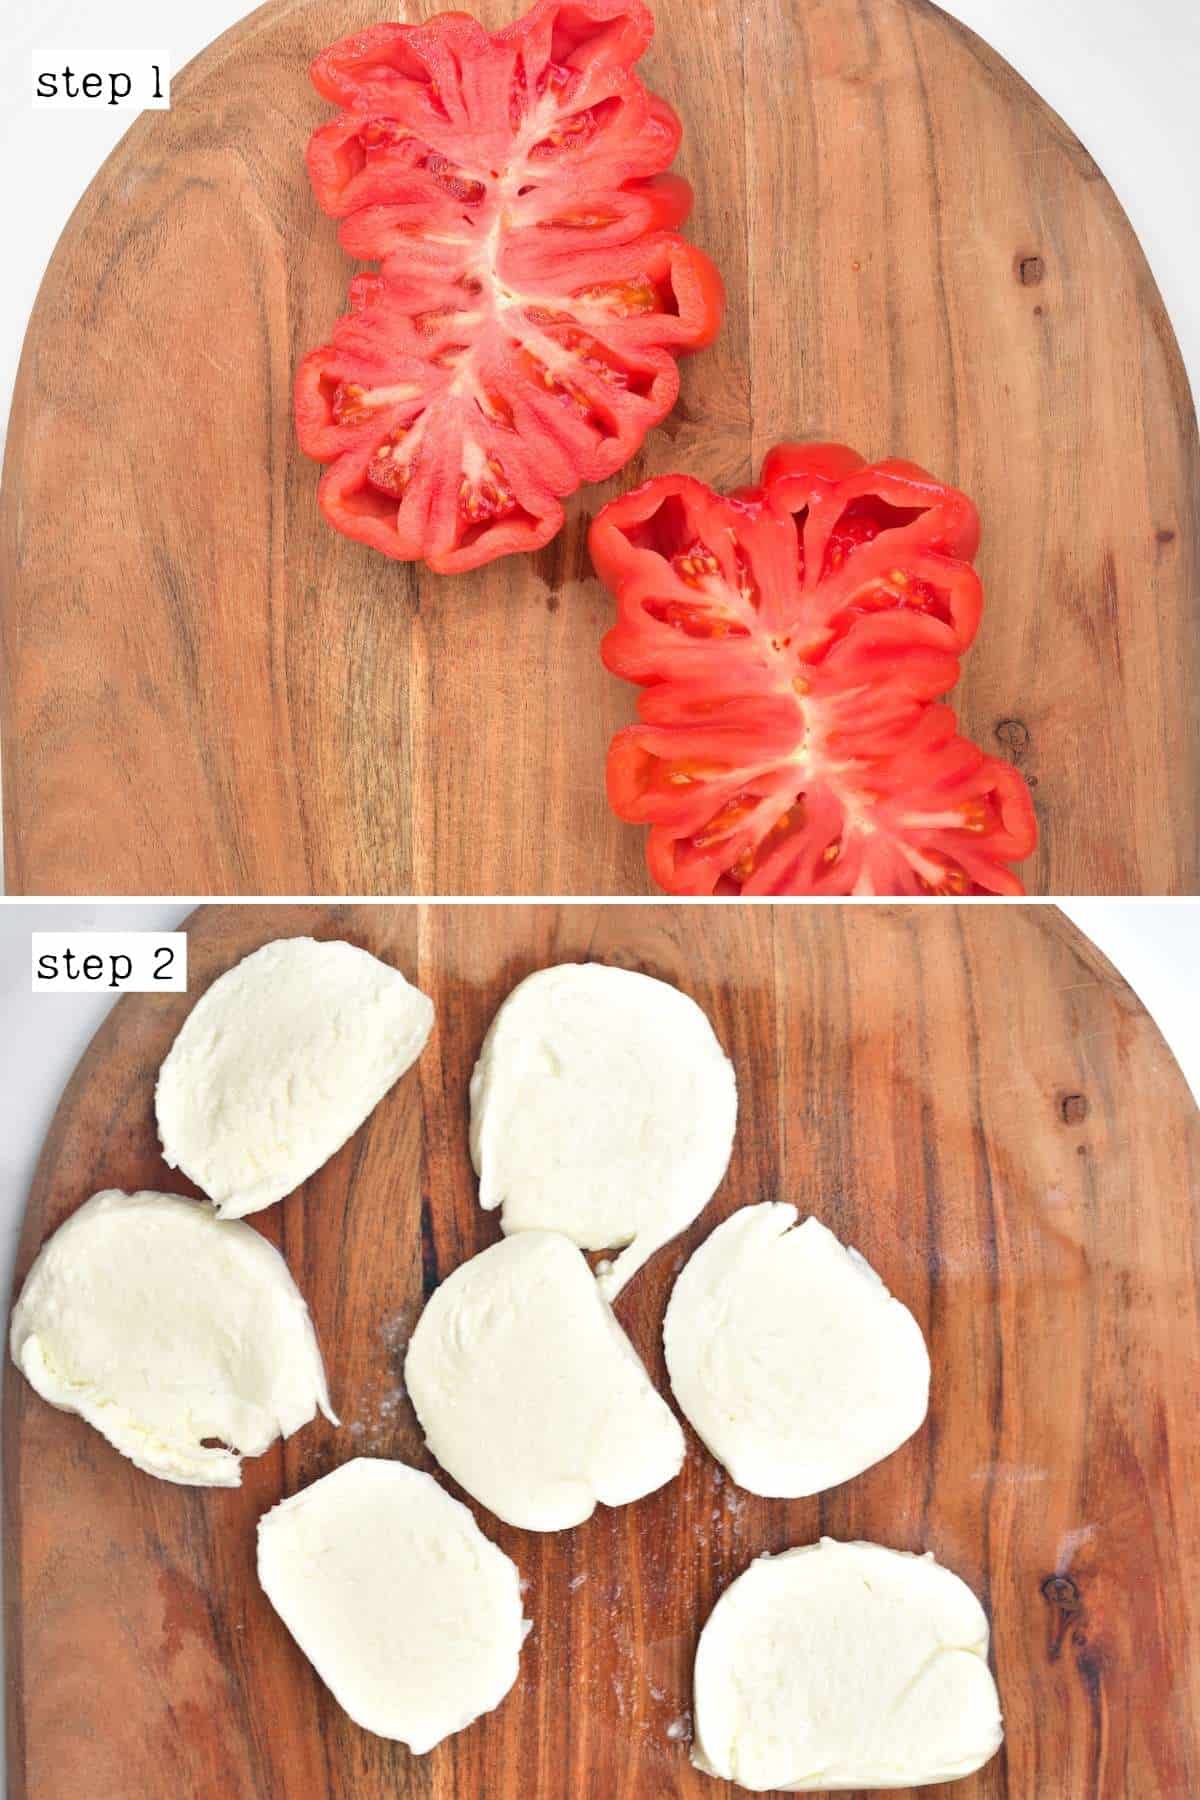 Sliced tomato and mozzarella